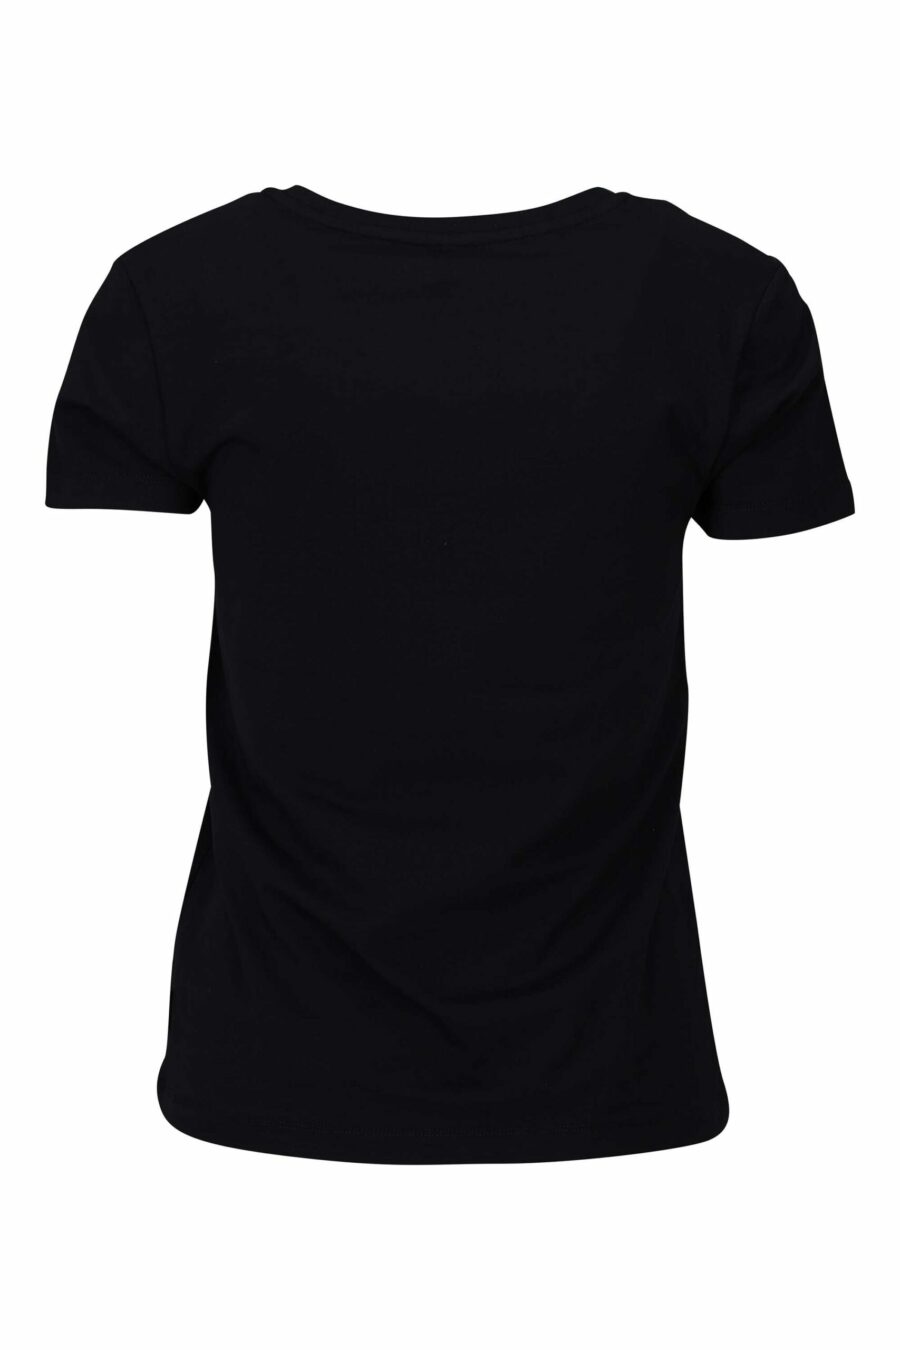 Schwarzes T-Shirt mit Logo-Bärenaufnäher "underbear" - 667113034348 1 skaliert